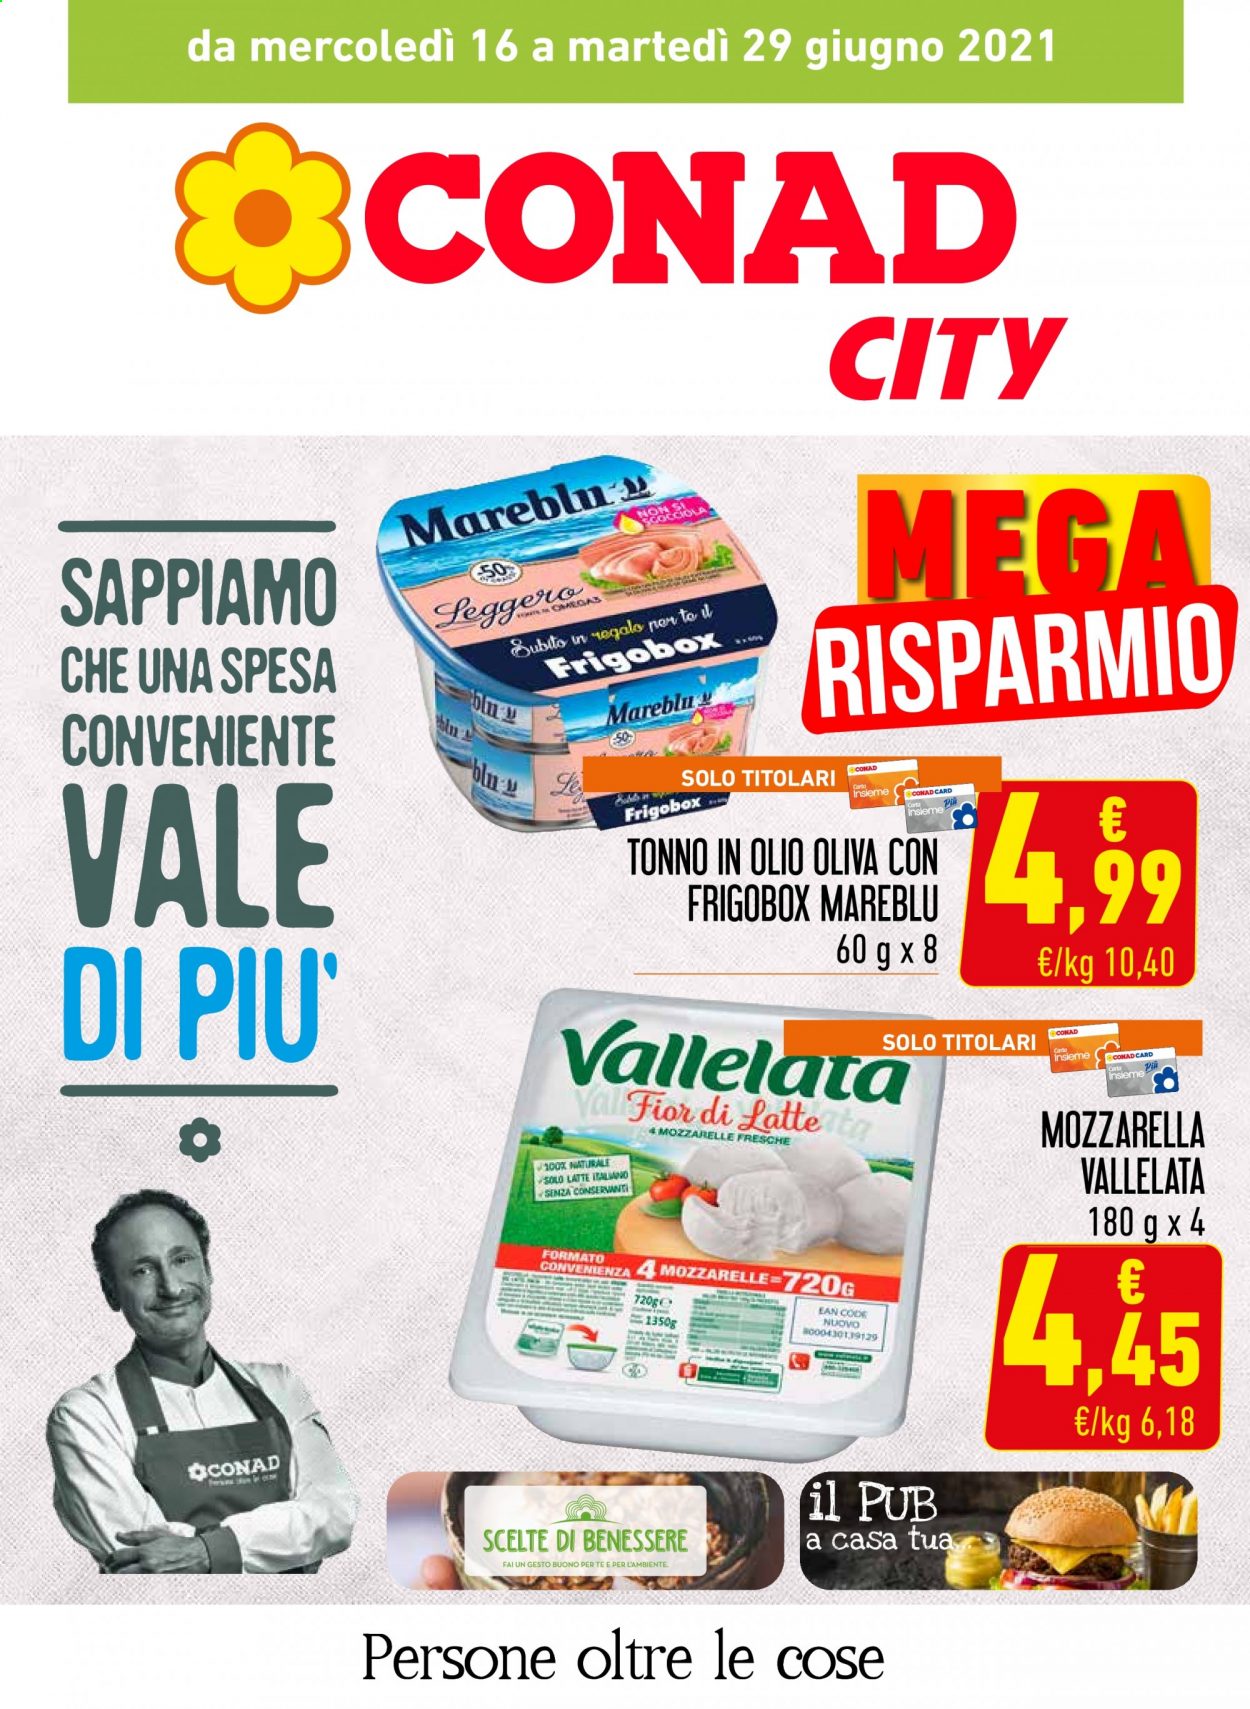 thumbnail - Volantino Conad - 16/6/2021 - 29/6/2021 - Prodotti in offerta - tonno, formaggio, mozzarella, Fior di Latte, Vallelata, Mareblu, tonno sott'olio. Pagina 1.